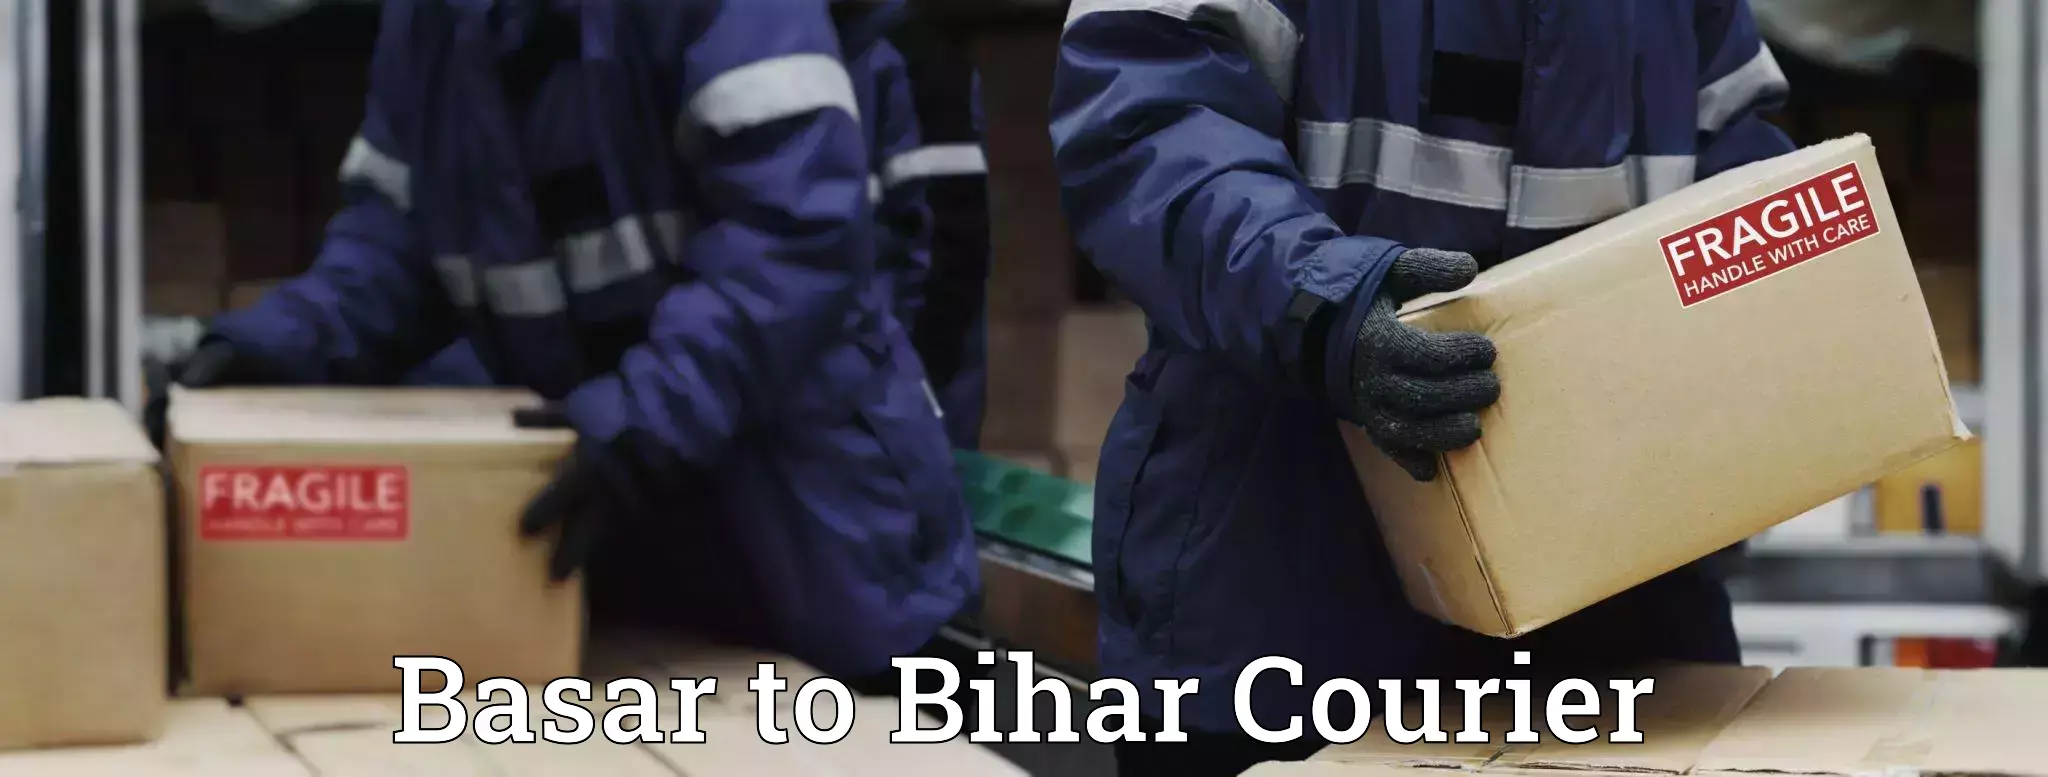 Bulk shipping discounts Basar to Bihar